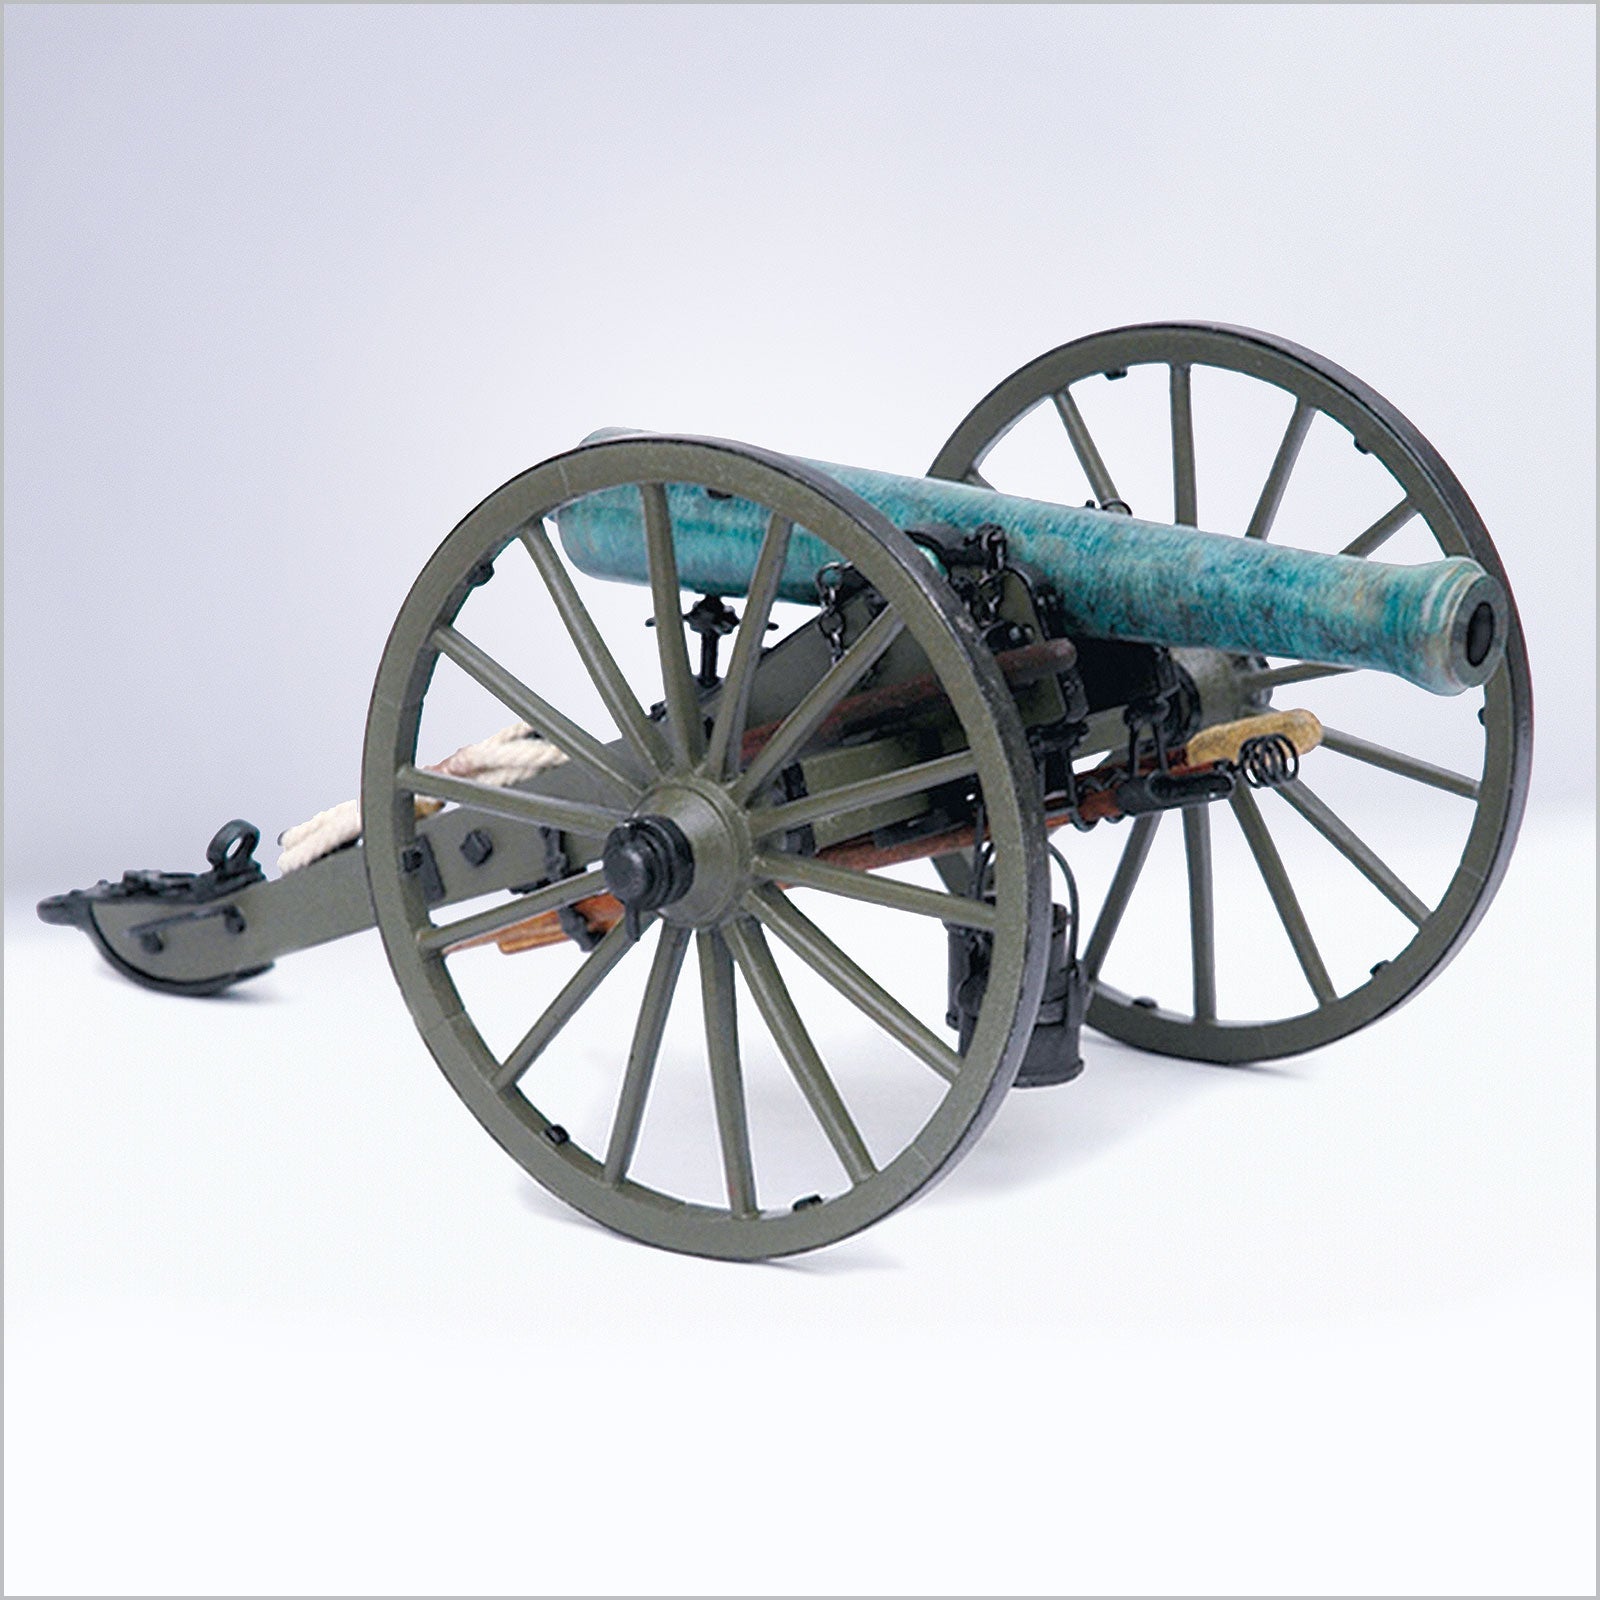 Guns of History - U.S. Civil War Napoleon Cannon, Model 1857, 12 - lb, 1:16 Scale